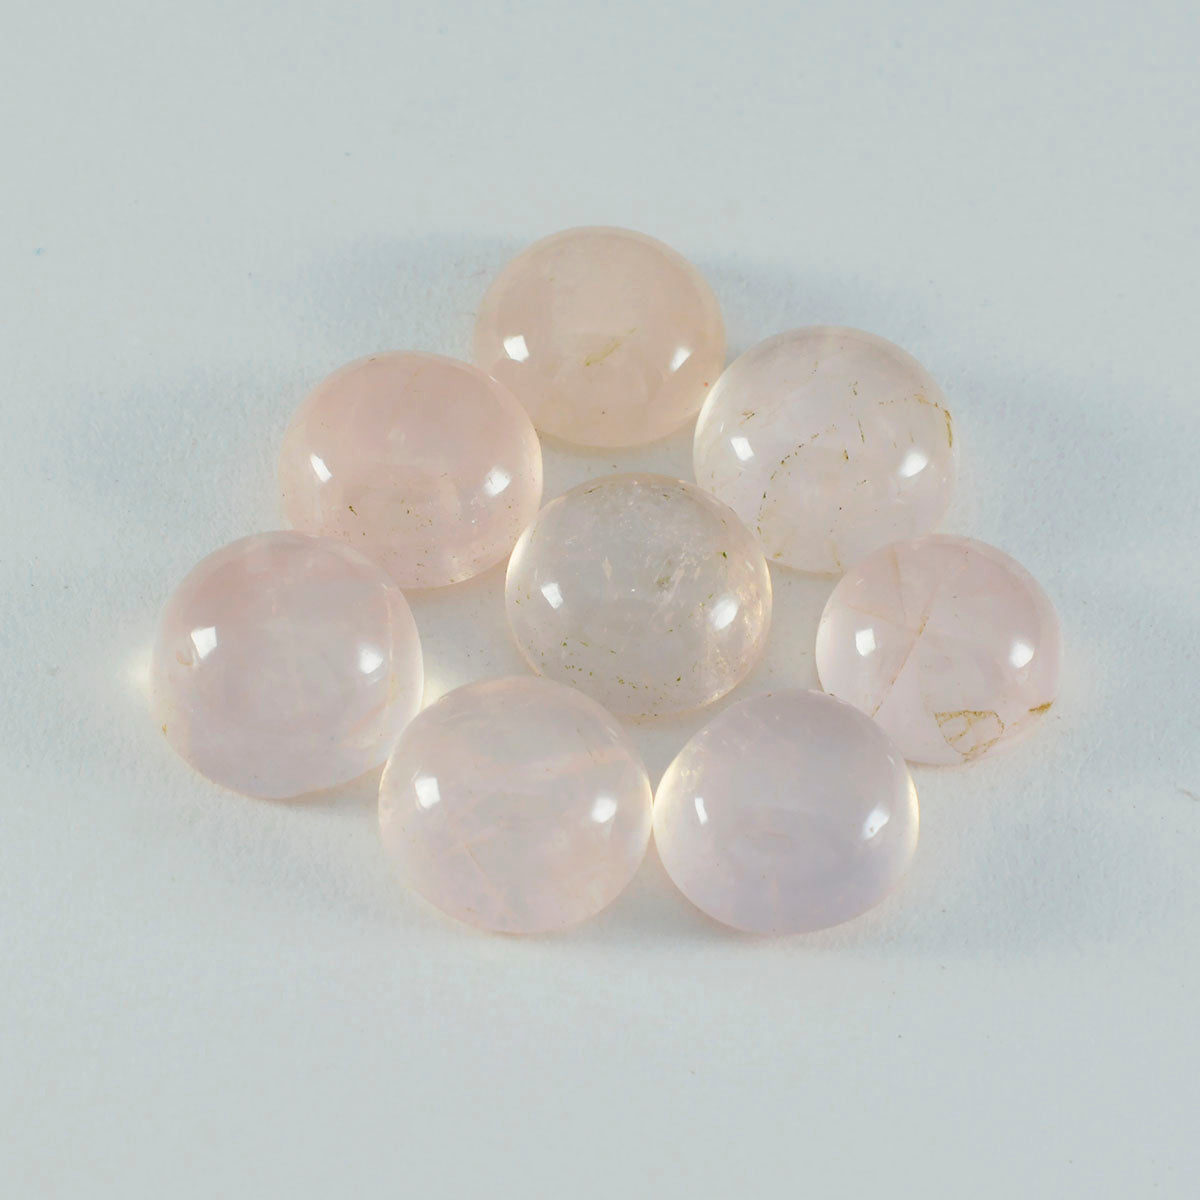 Riyogems 1PC roze rozenkwarts cabochon 10x10 mm ronde vorm aantrekkelijke kwaliteitsedelstenen